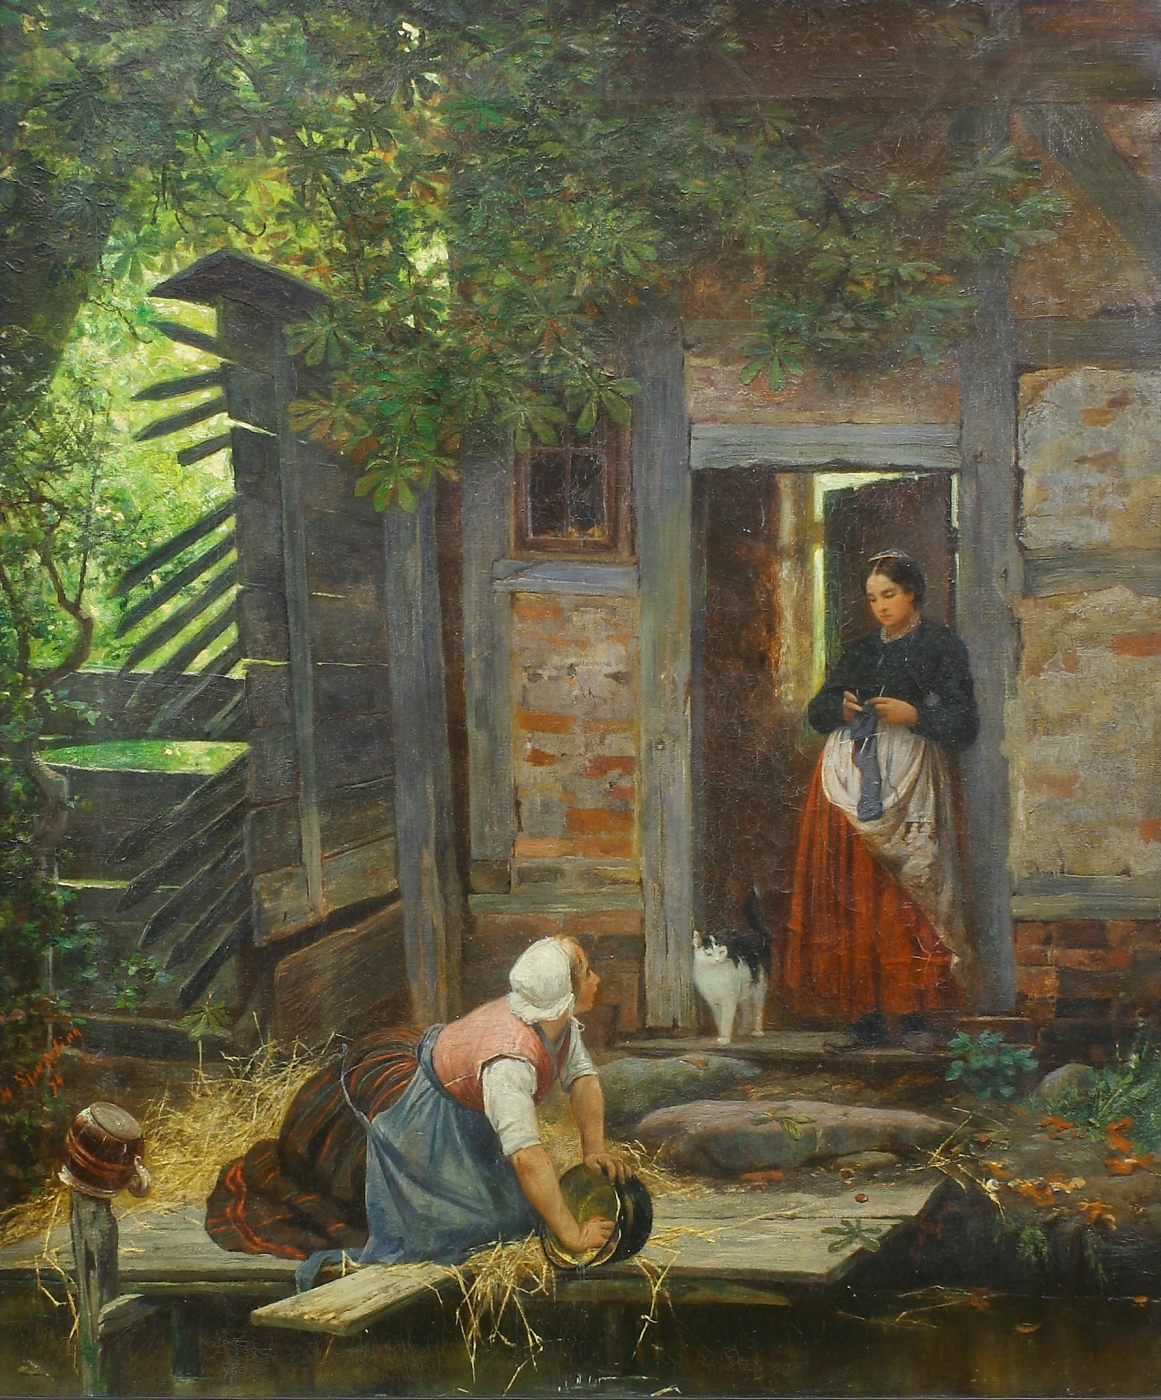 Auktionshaus Quentin Berlin  Gemälde Sperling  Heinrich  Zwei Frauen und Katze bei einem alten Haus. (18)74